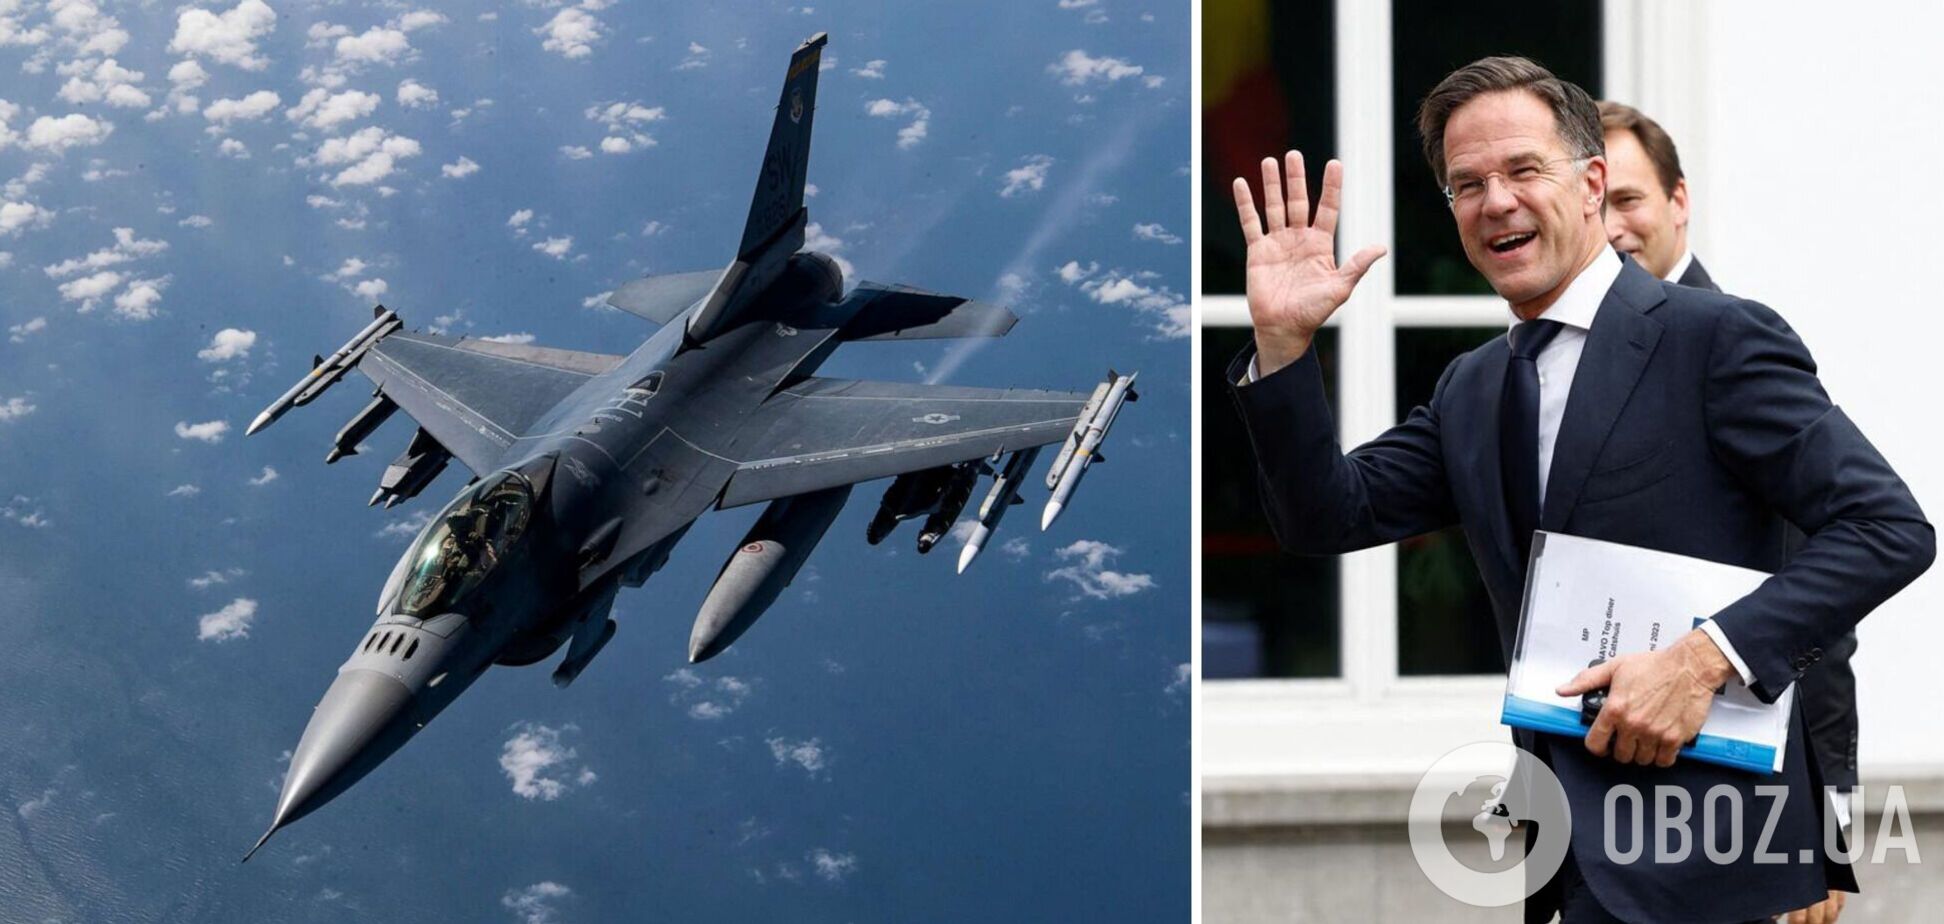 Нидерланды поставят Украине по меньшей мере 24 истребителя F-16, – Рютте